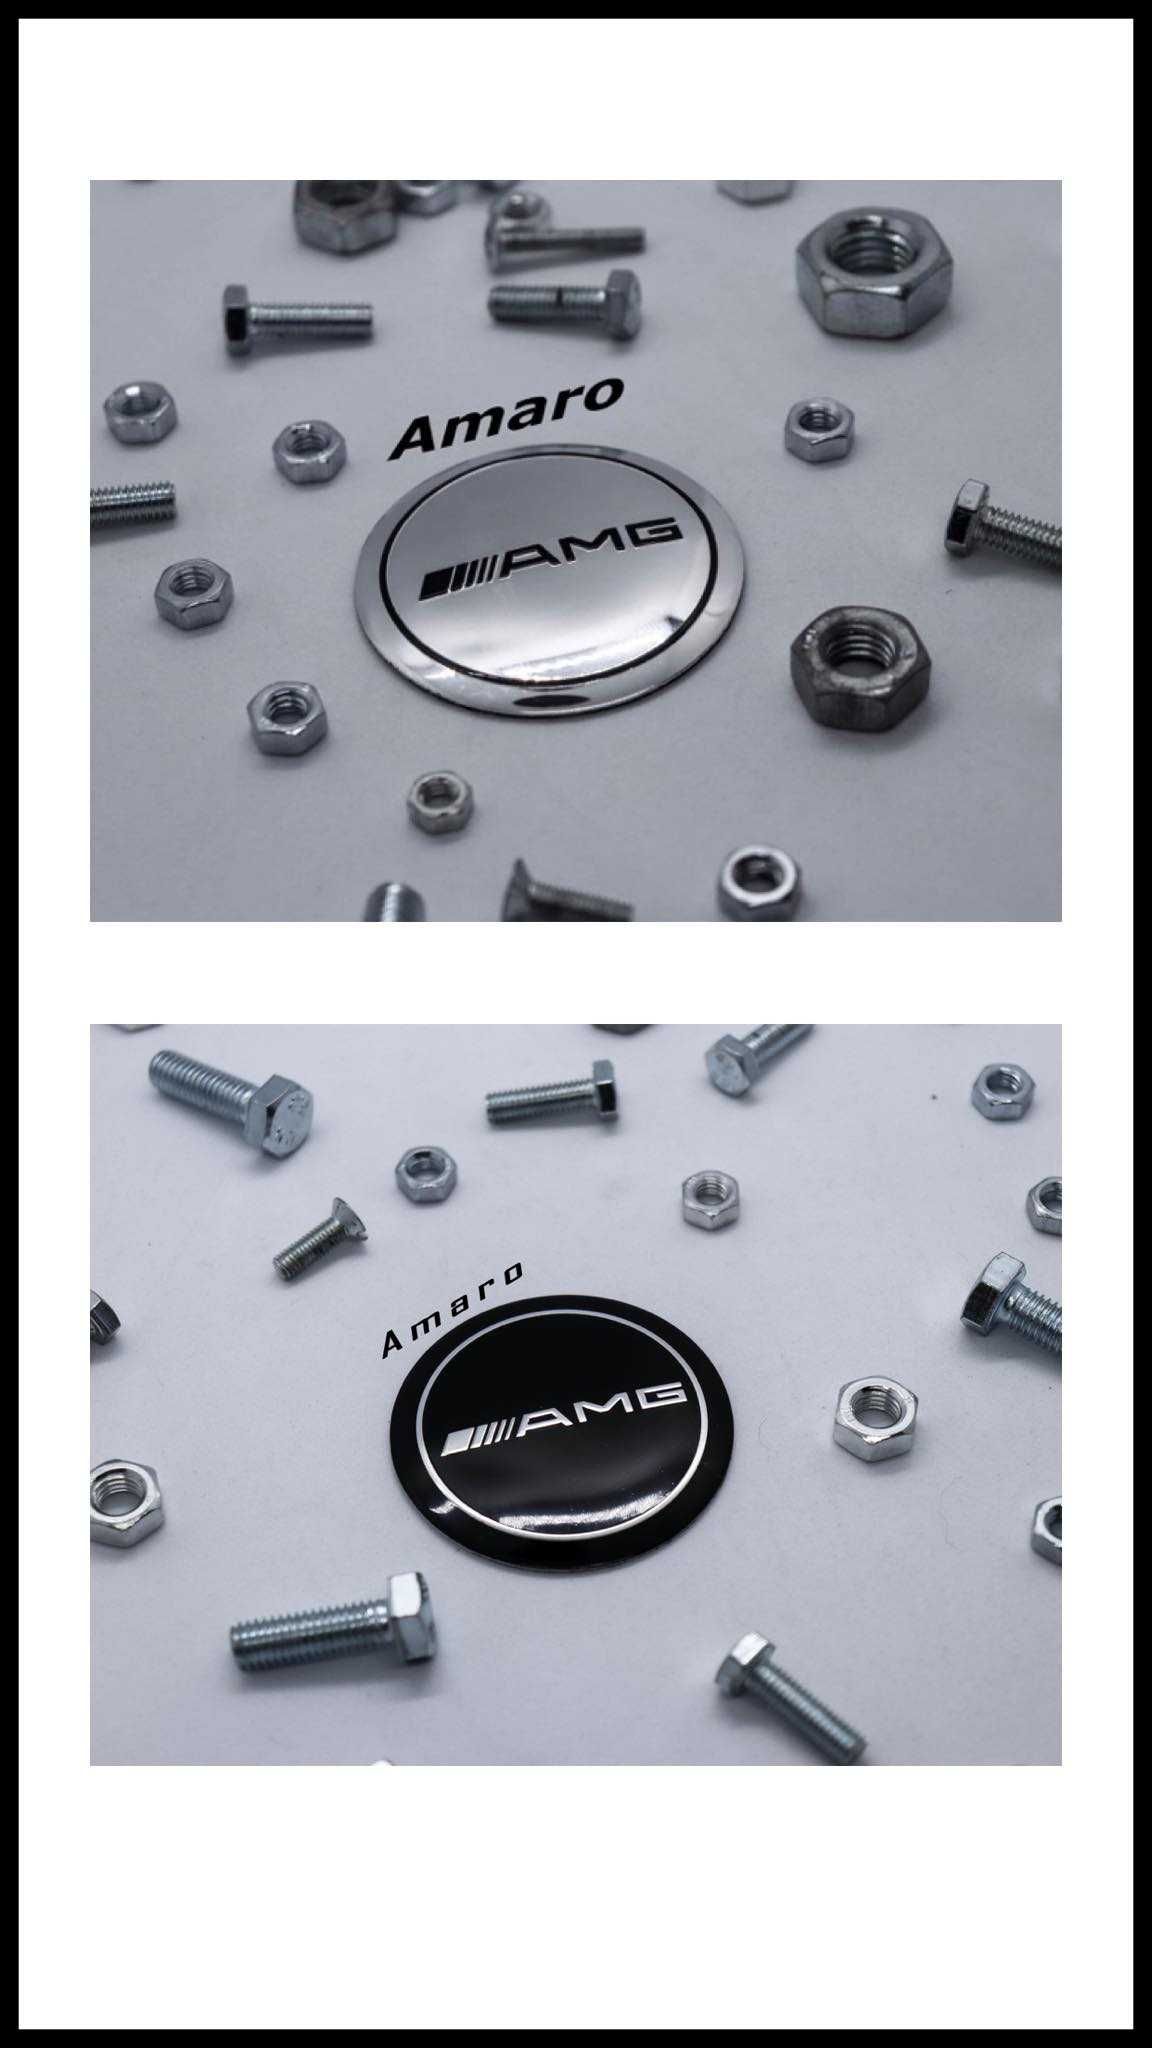 4 Símbolos/Logos para Jantes em Alumínio Merdeces AMG (2 Cores)| NOVOS